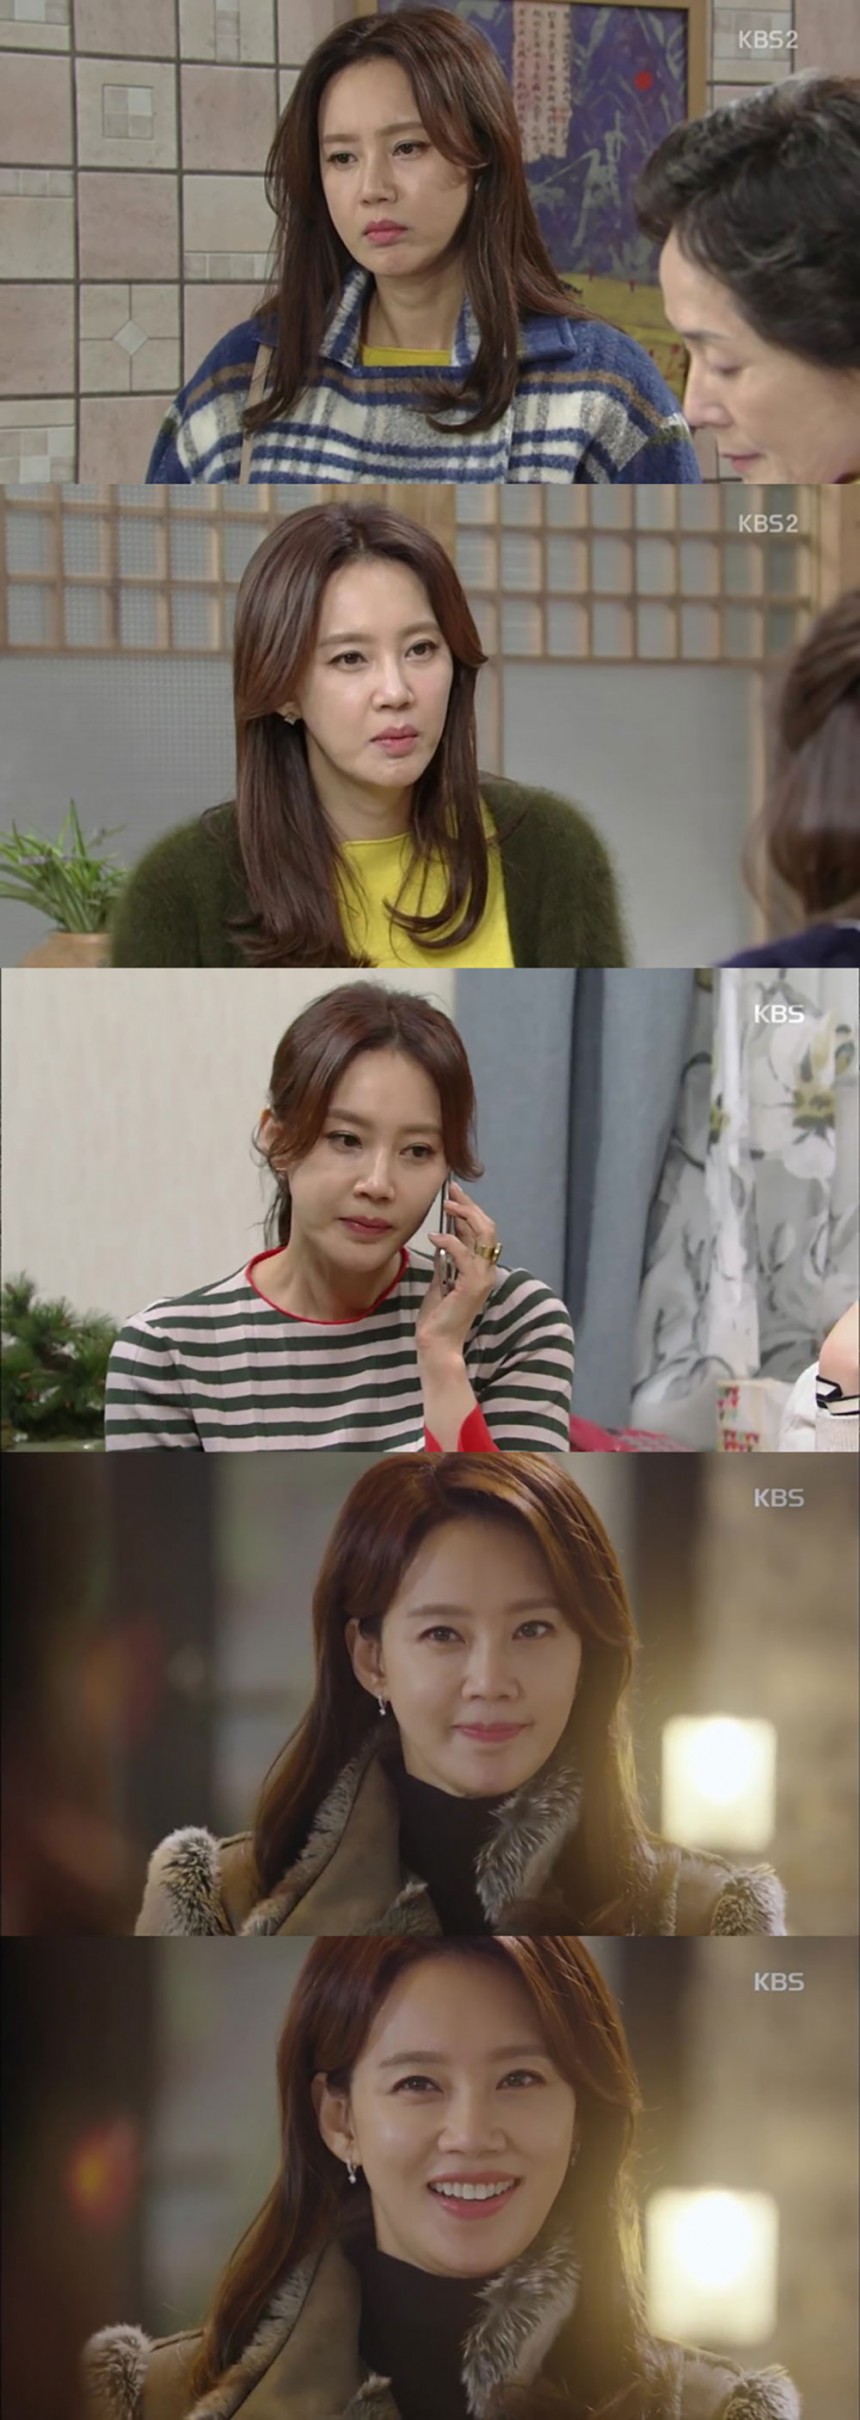 ‘월계수 양복점 신사들’ 오현경 / KBS2 ‘월게수 양복점 신사들’ 방송캡처